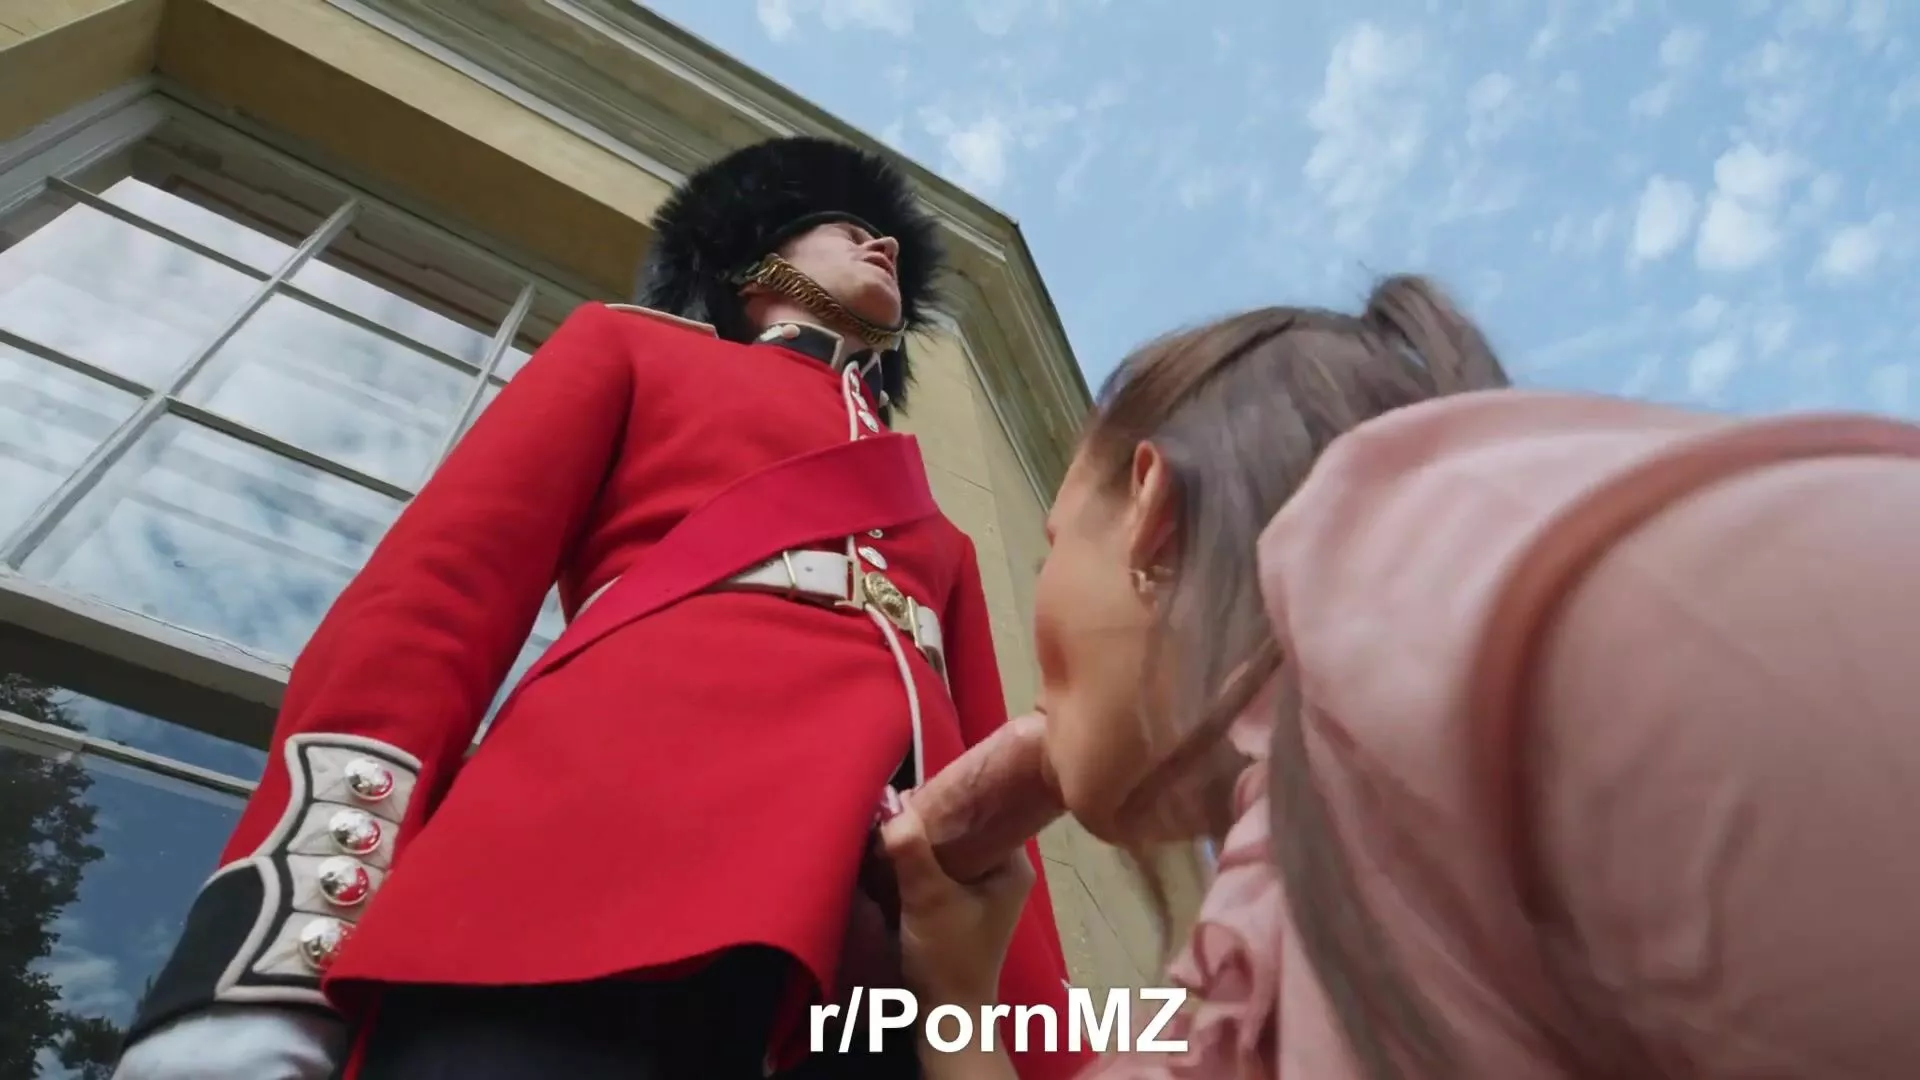 Royal Porn Gif - Stroking The Royal Guard - Porn GIF Video | nezyda.com